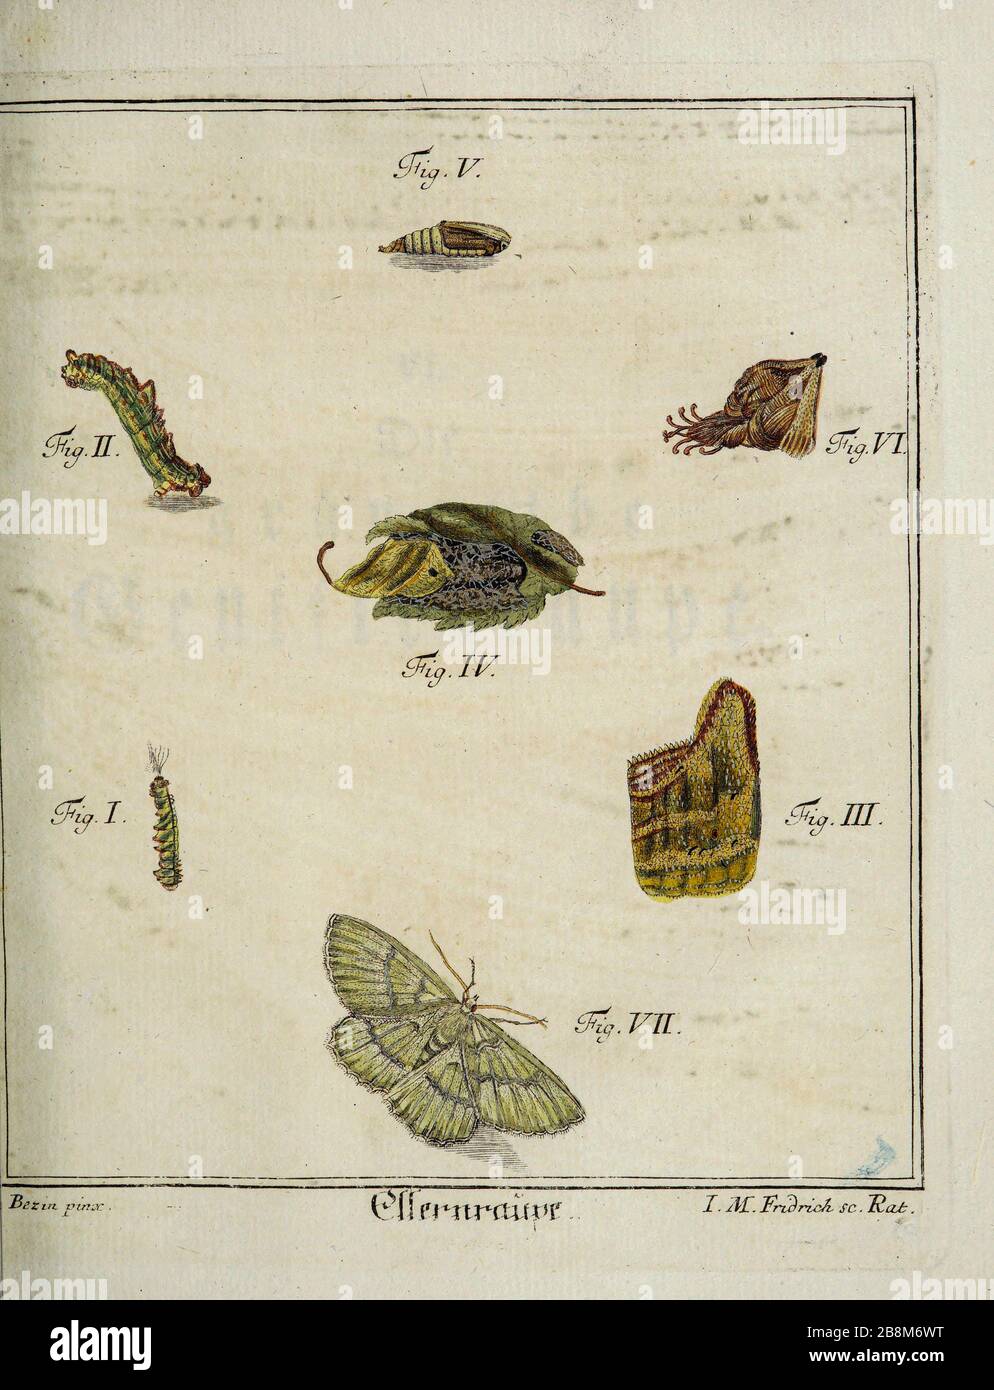 Schmetterlinge und Motten Entomologiestudie aus dem 18. Jahrhundert von D. Jacob Christian Schaffers Abhandlungen von Insecten (Abhandlungen über Insekten), die 1764 von Schäffer, Jacob Christian, 1718-1790 zweiter Zusatz, gedruckt in Deutschland im Jahr 1797 veröffentlicht wurden Stockfoto